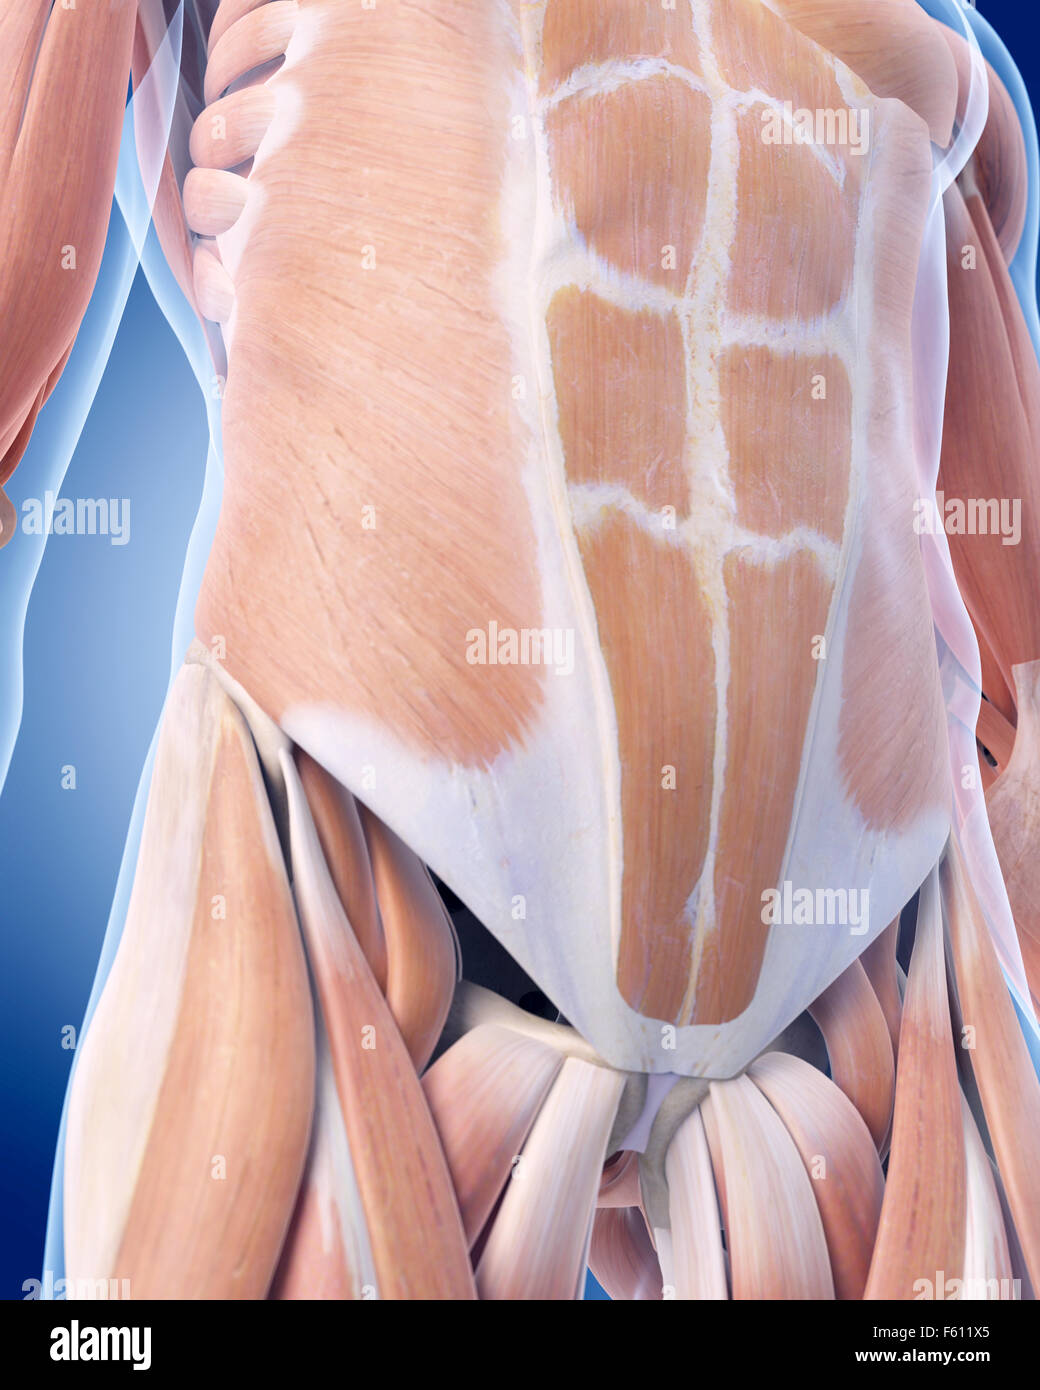 Dal punto di vista medico illustrazione accurata dei muscoli addominali Foto Stock